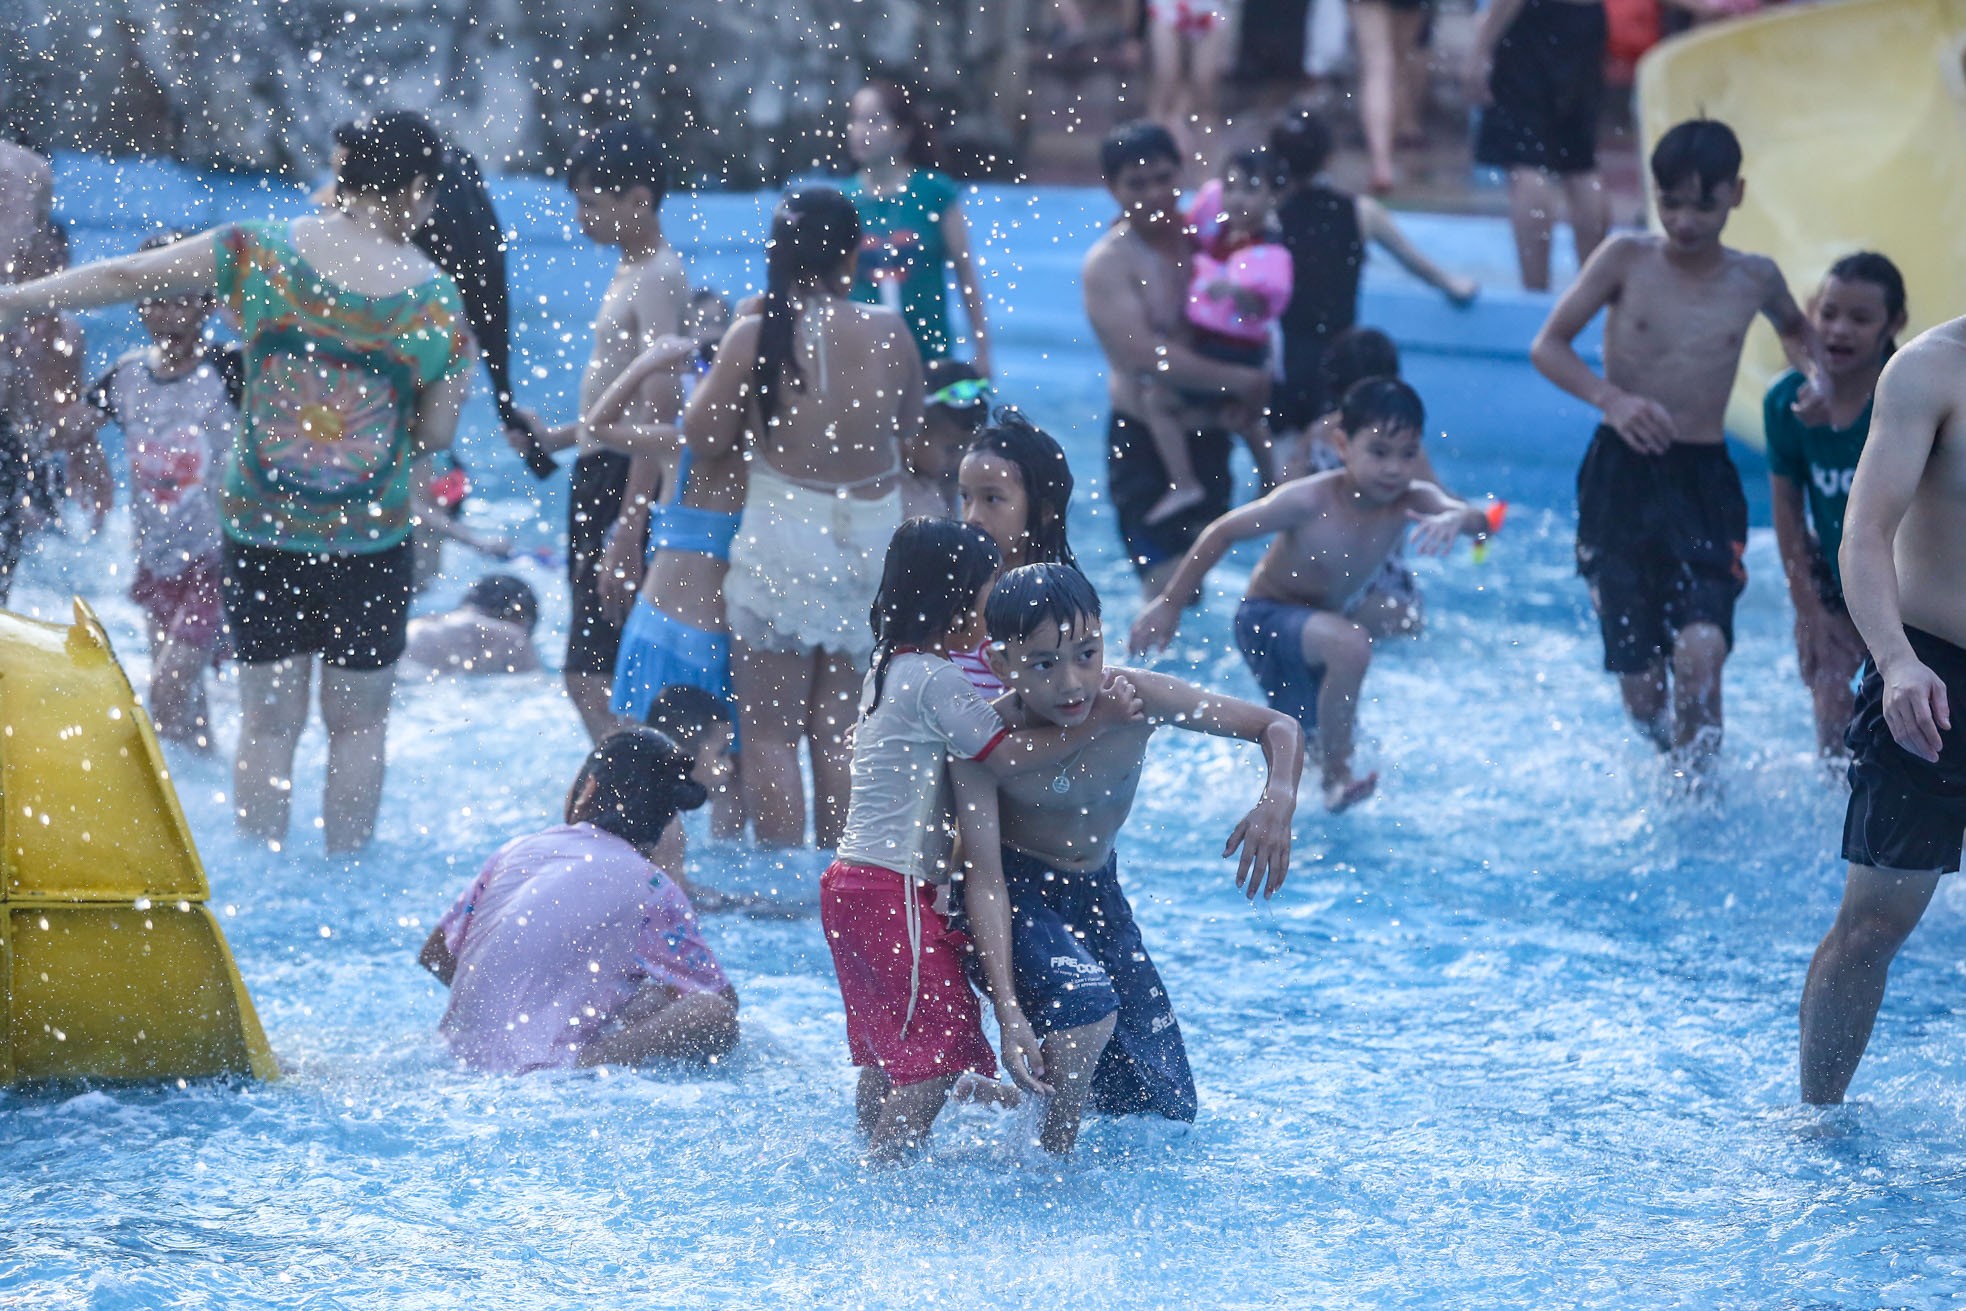 Công viên nước Hồ Tây đông nghịt người đến giải nhiệt trong ngày 2/9 - Ảnh 19.